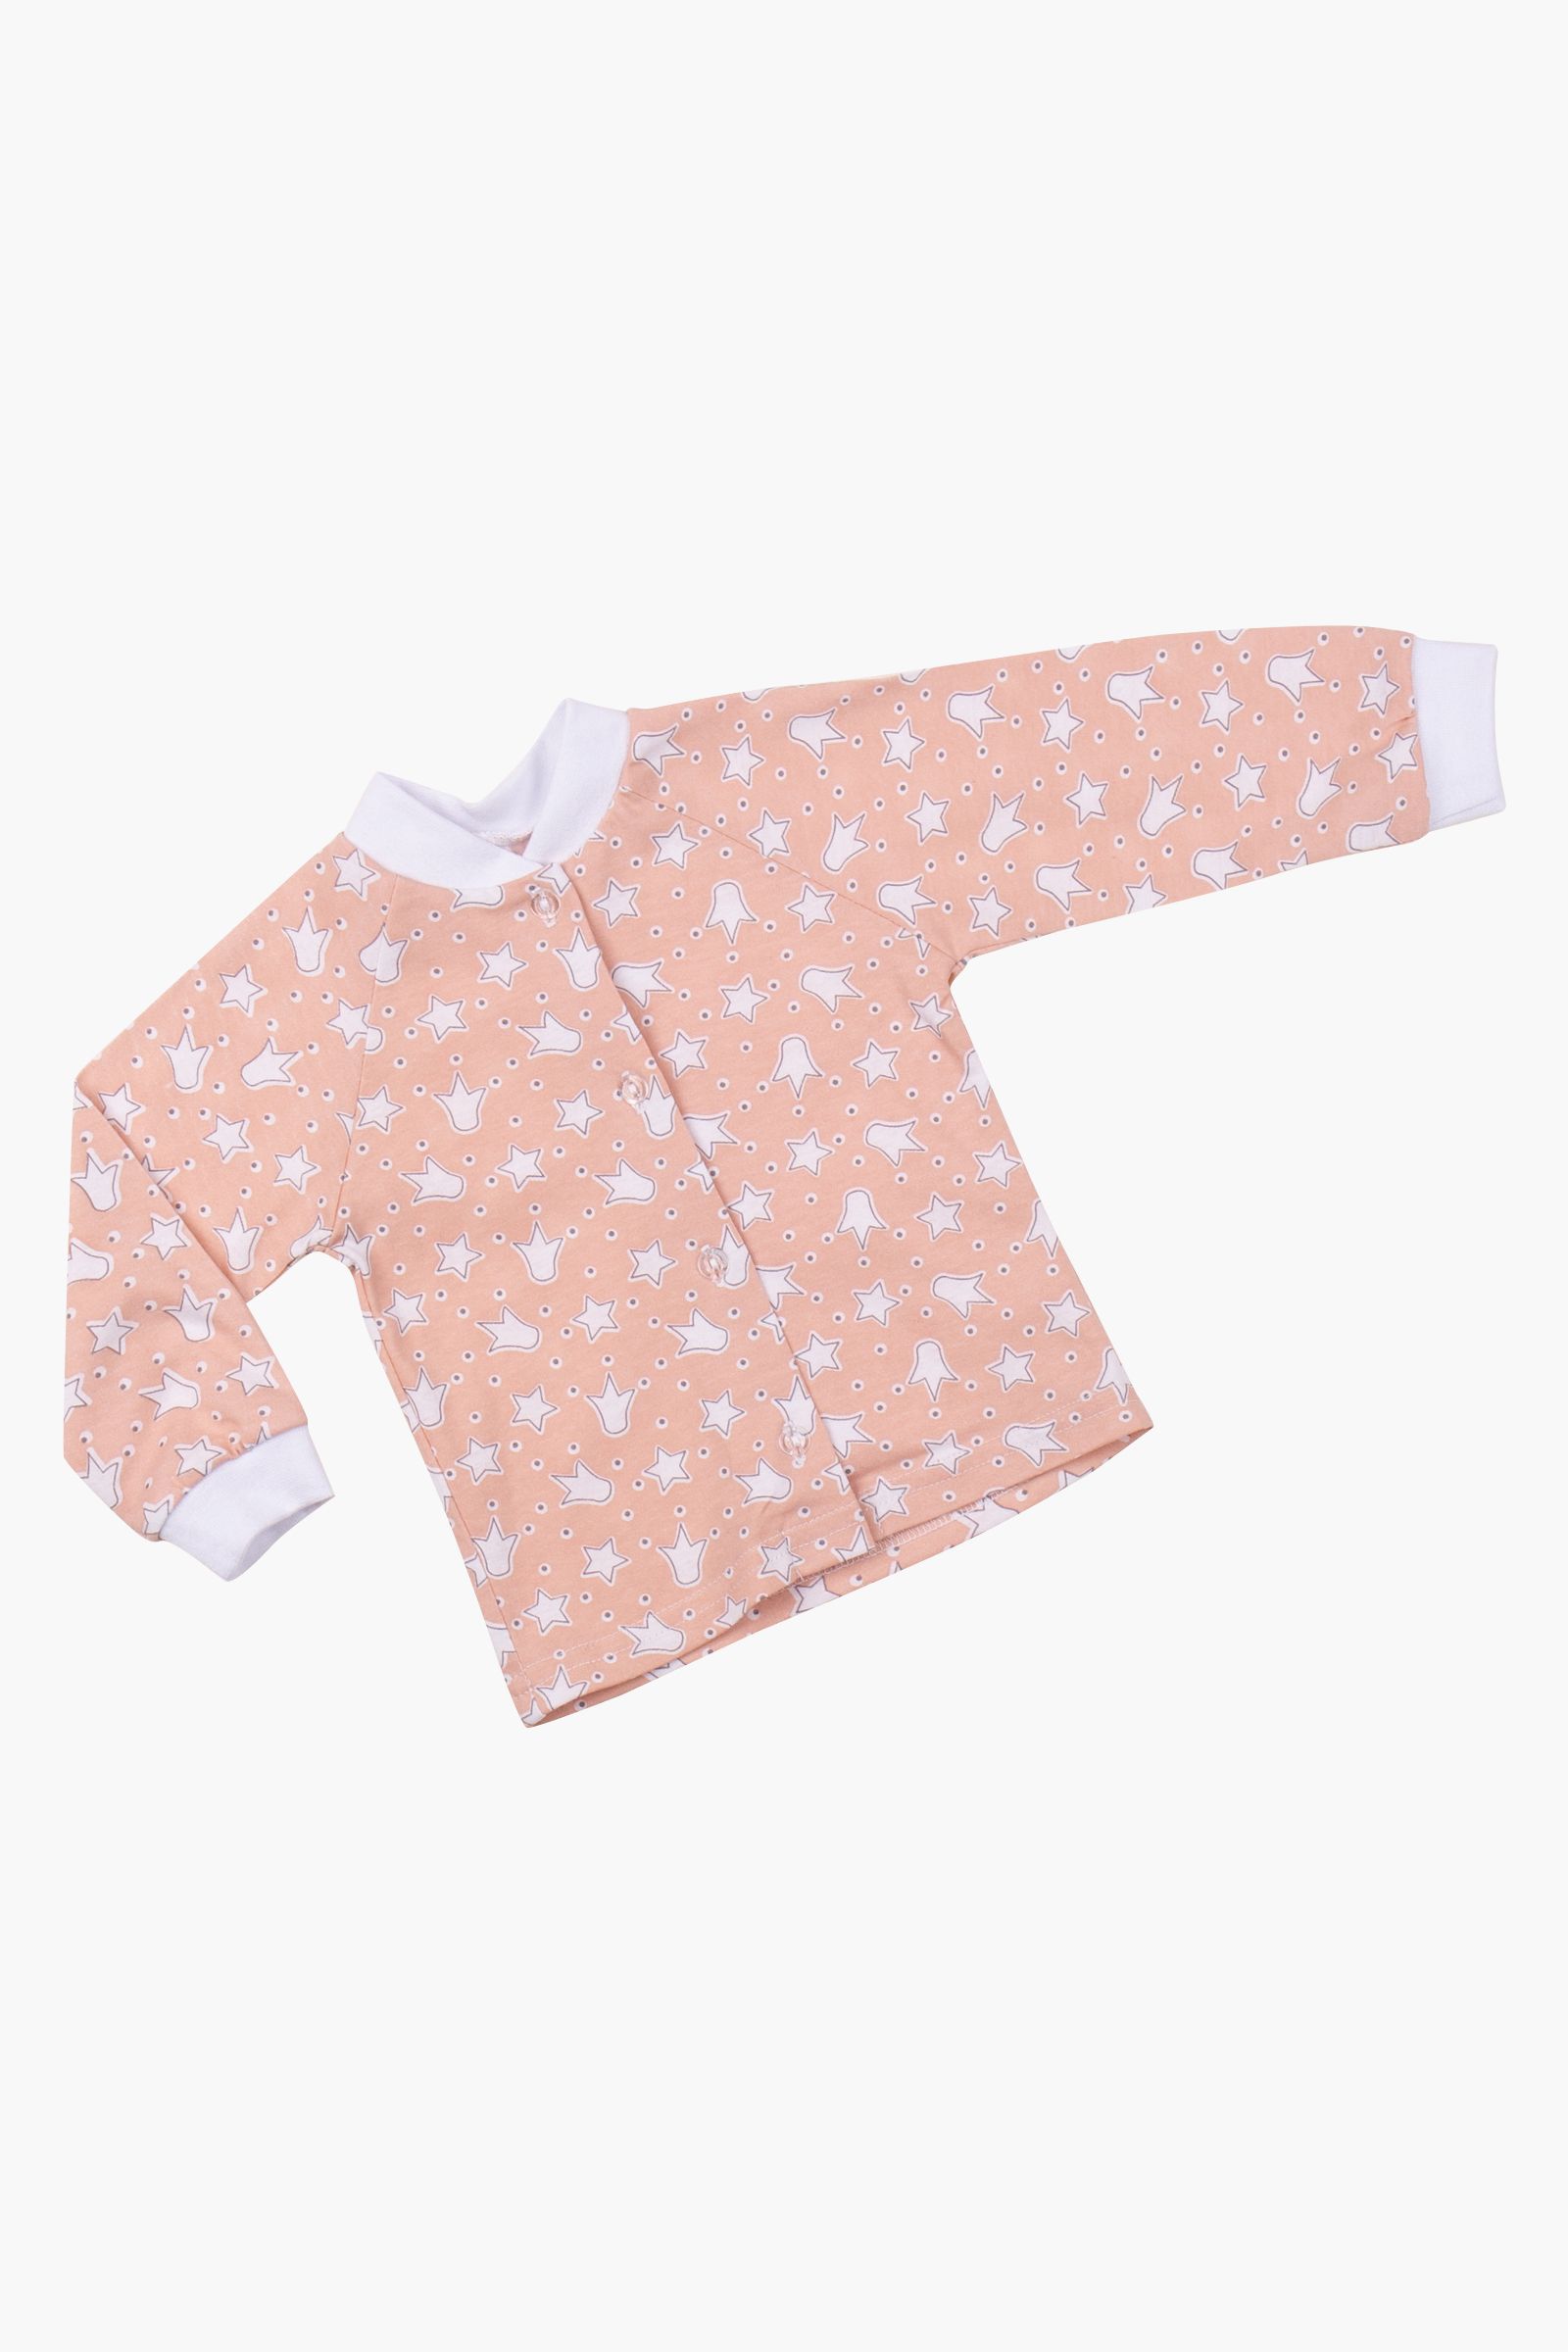 Кофточка-КФ02-168 оптом от производителя детской одежды 'Алёна'